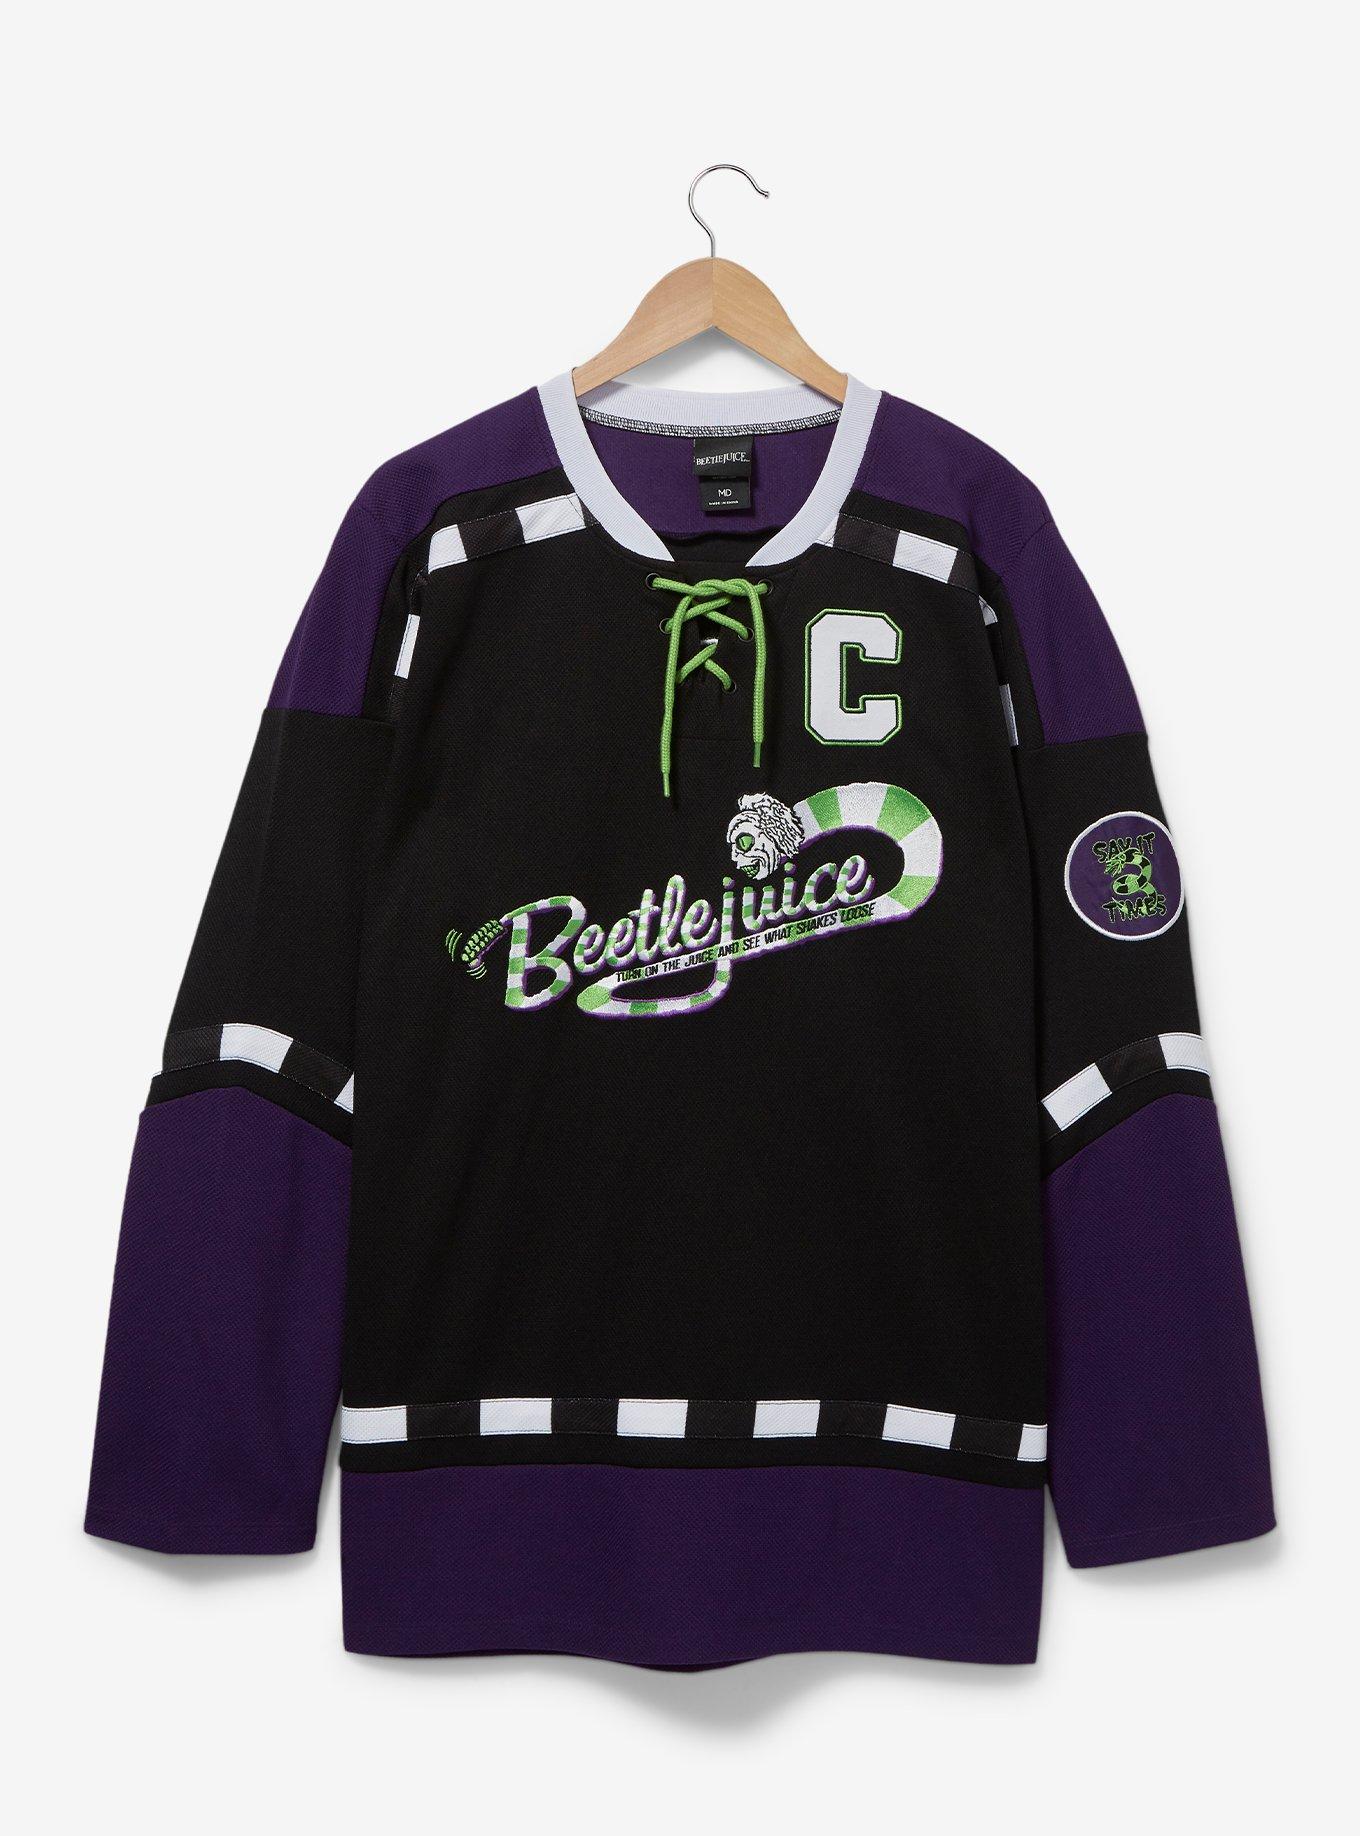 Section 8 Custom Hockey Jersey